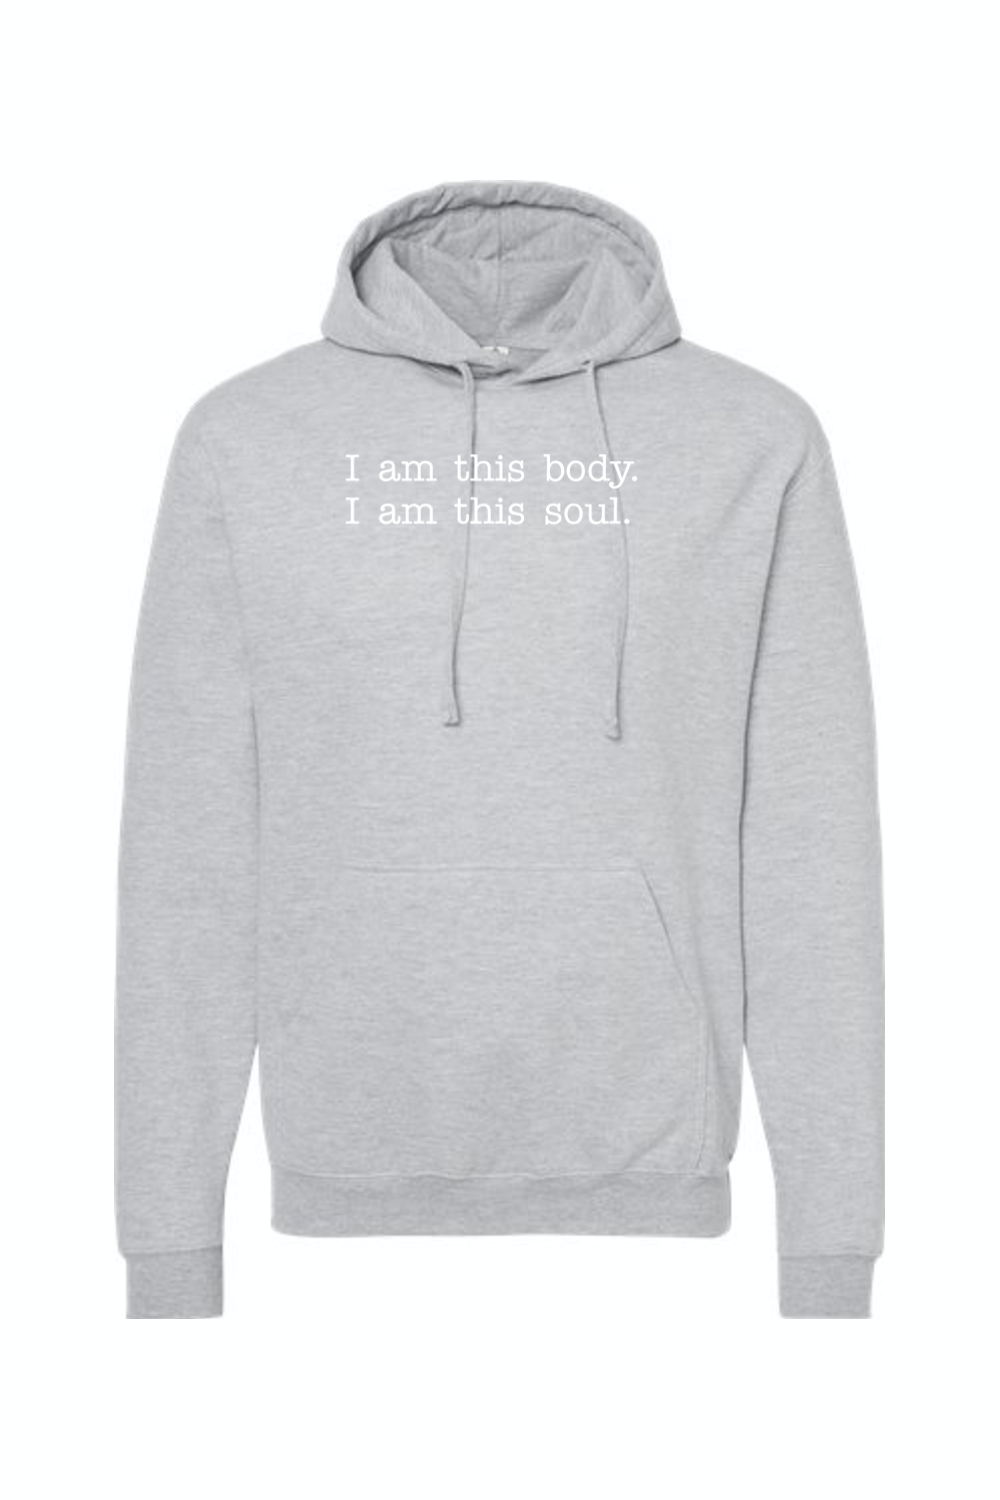 Body/Soul Composite - Human Integrity Hoodie Sweatshirt